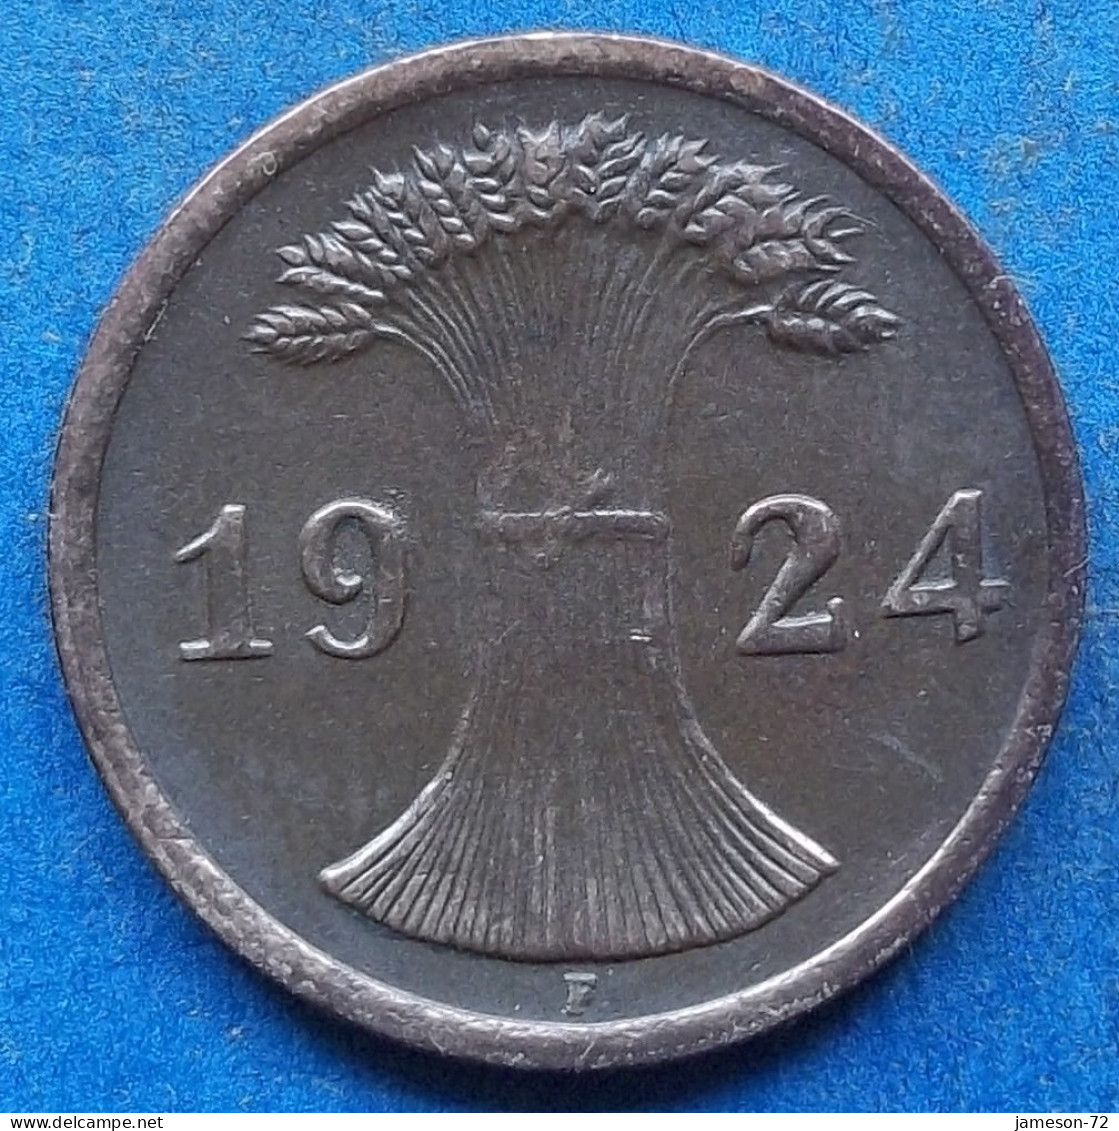 GERMANY - 2 Reichspfennig 1924 F KM# 38 Weimar Republic Reichsmark Coinage (1924-1938) - Edelweiss Coins - 2 Renten- & 2 Reichspfennig